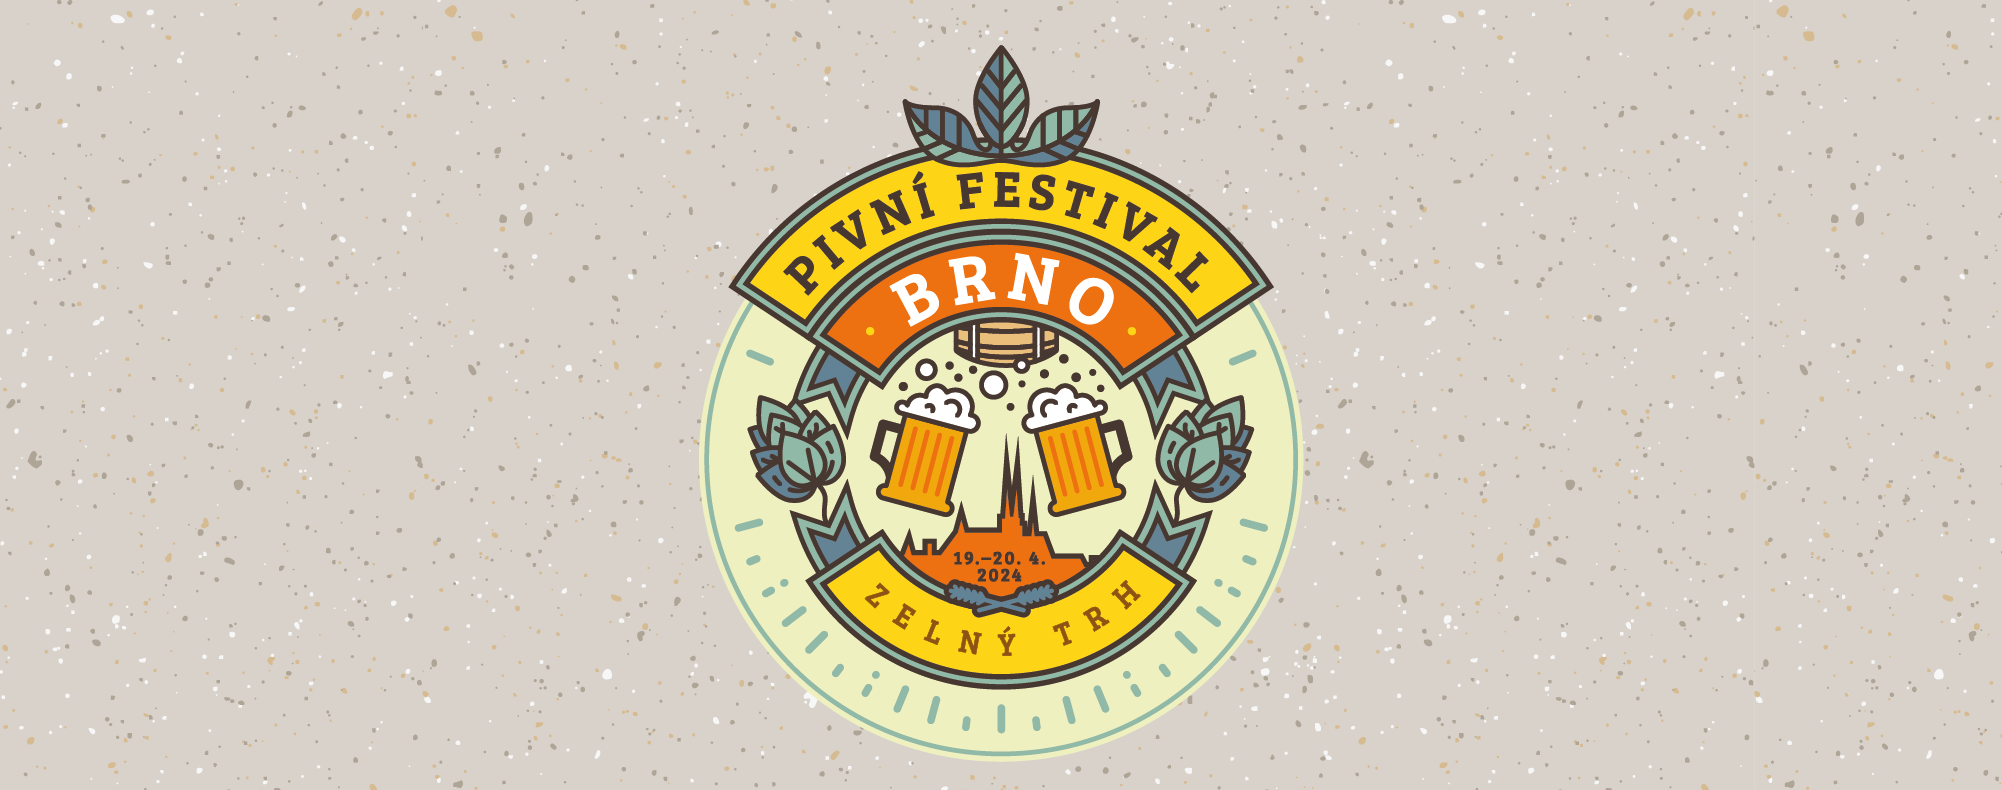 Pivní festival Brno